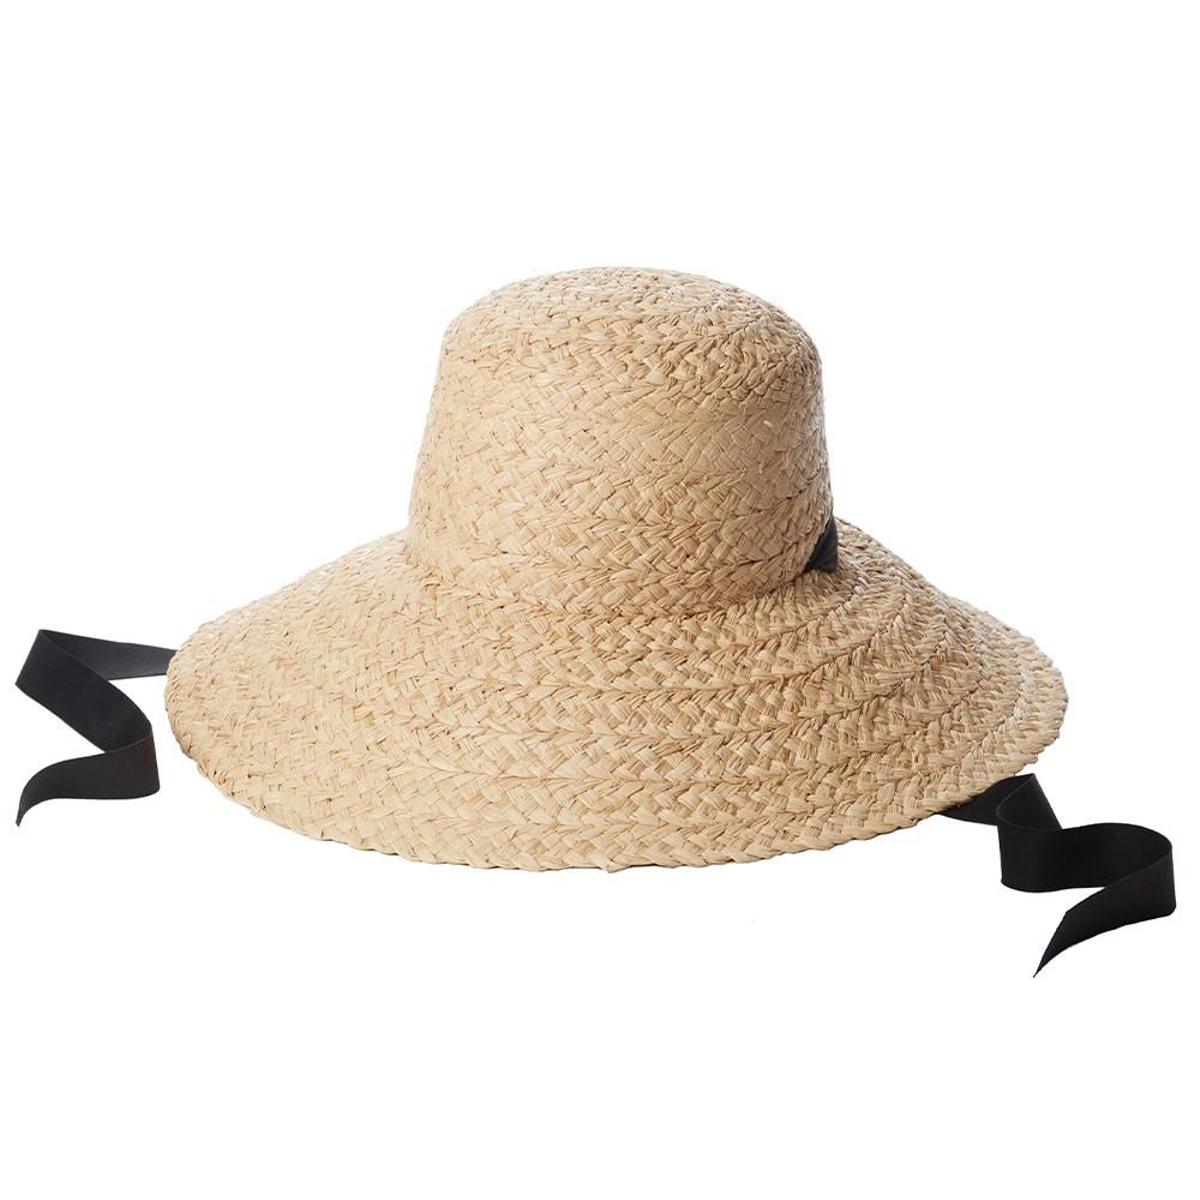 Sombrero de rafia lucido por Meghan Markle